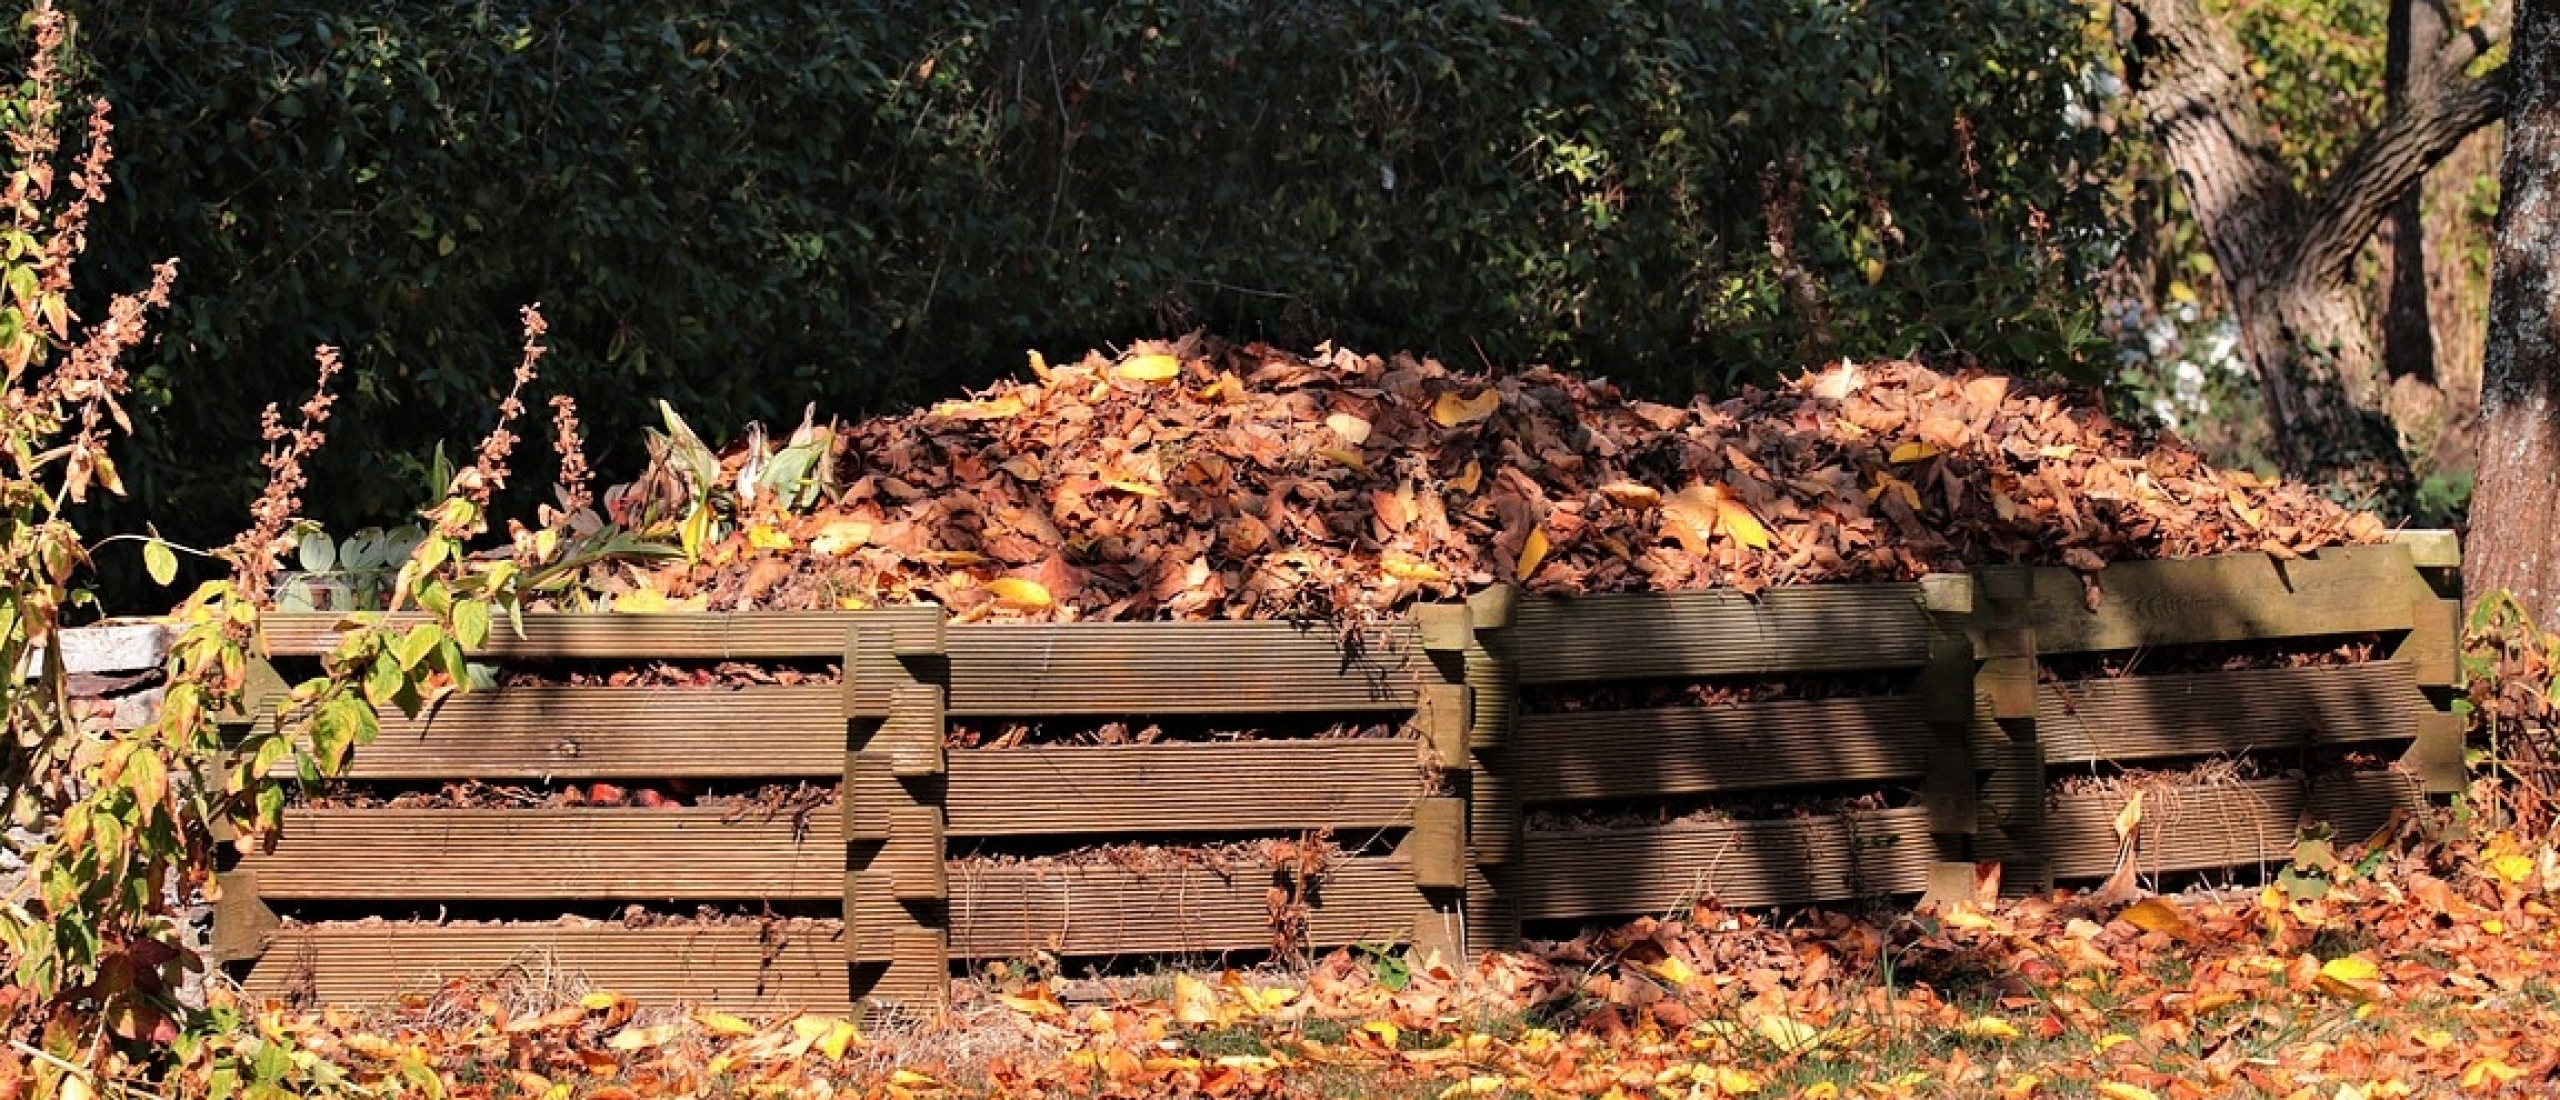 Composteren - de diepte in deel II Koolstof: stikstofverhoudingen eenvoudig gemaakt